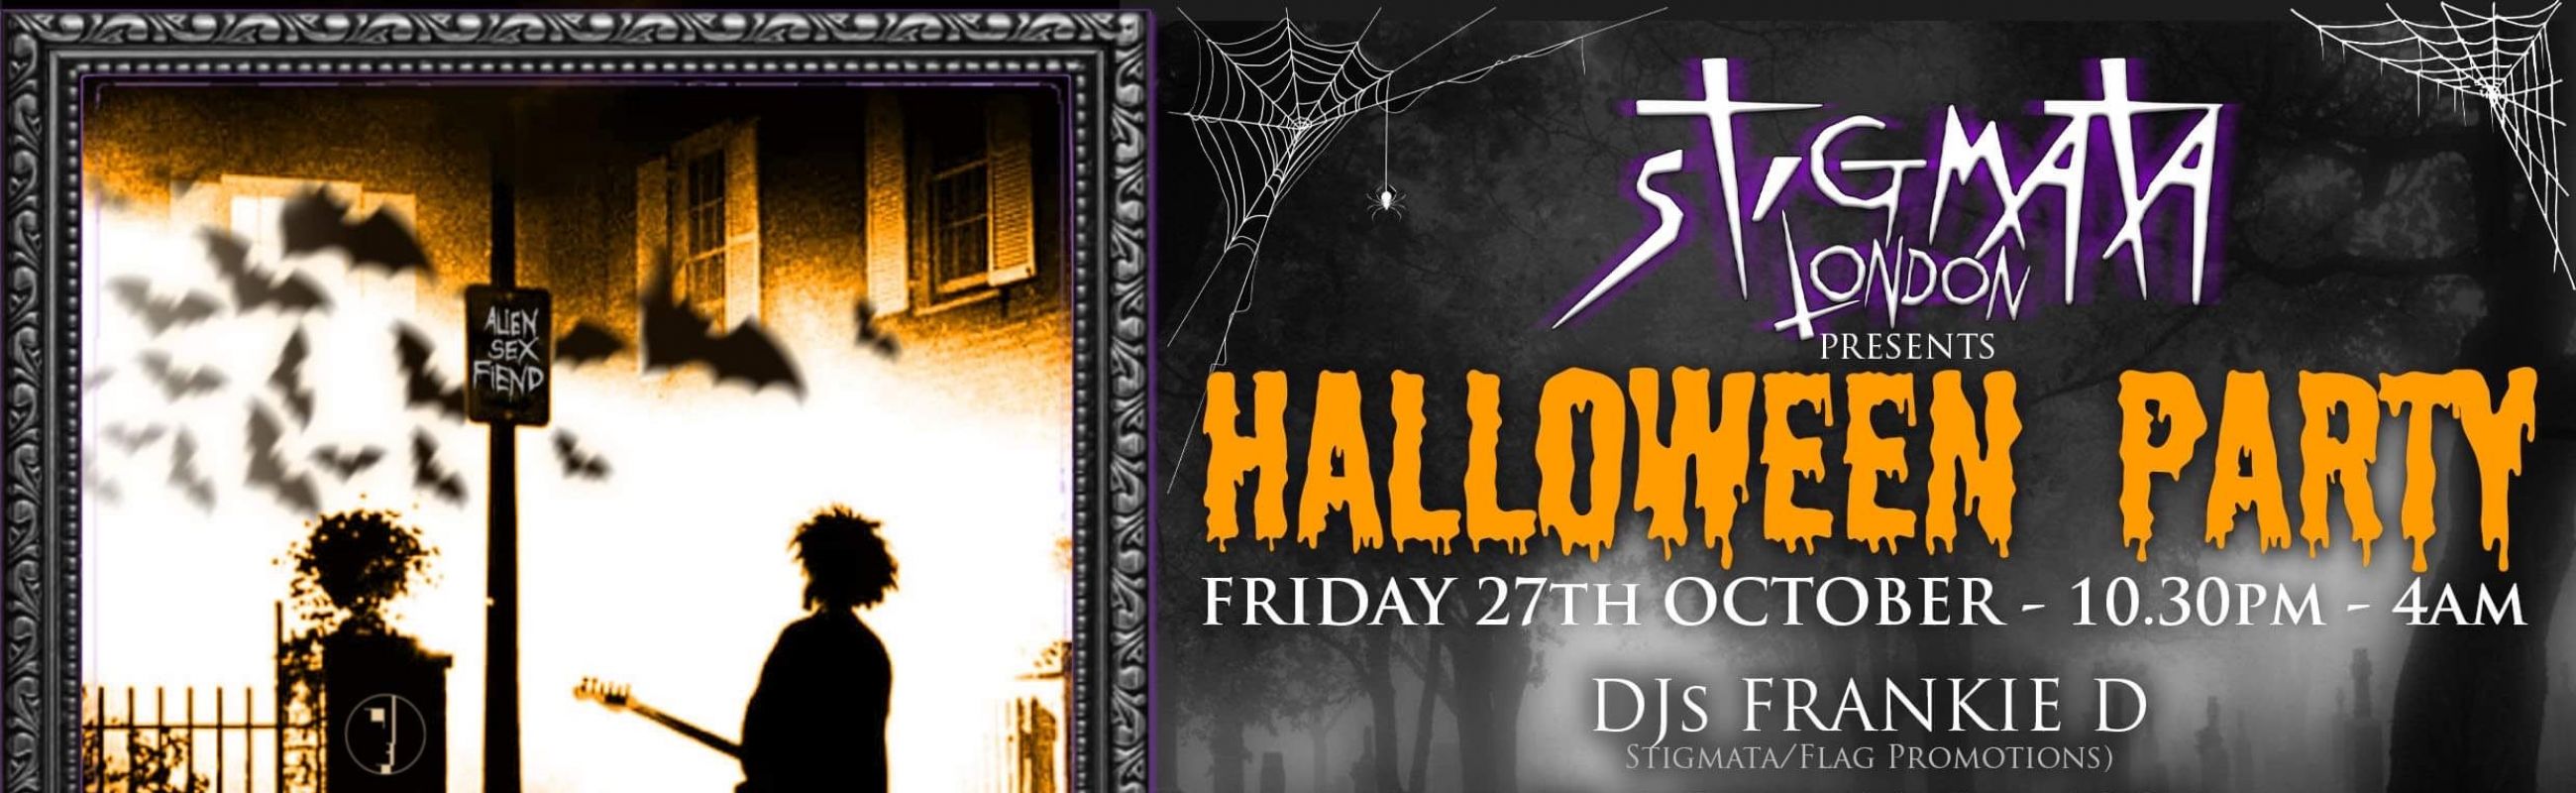 Club Stigmata Halloween Party Poster